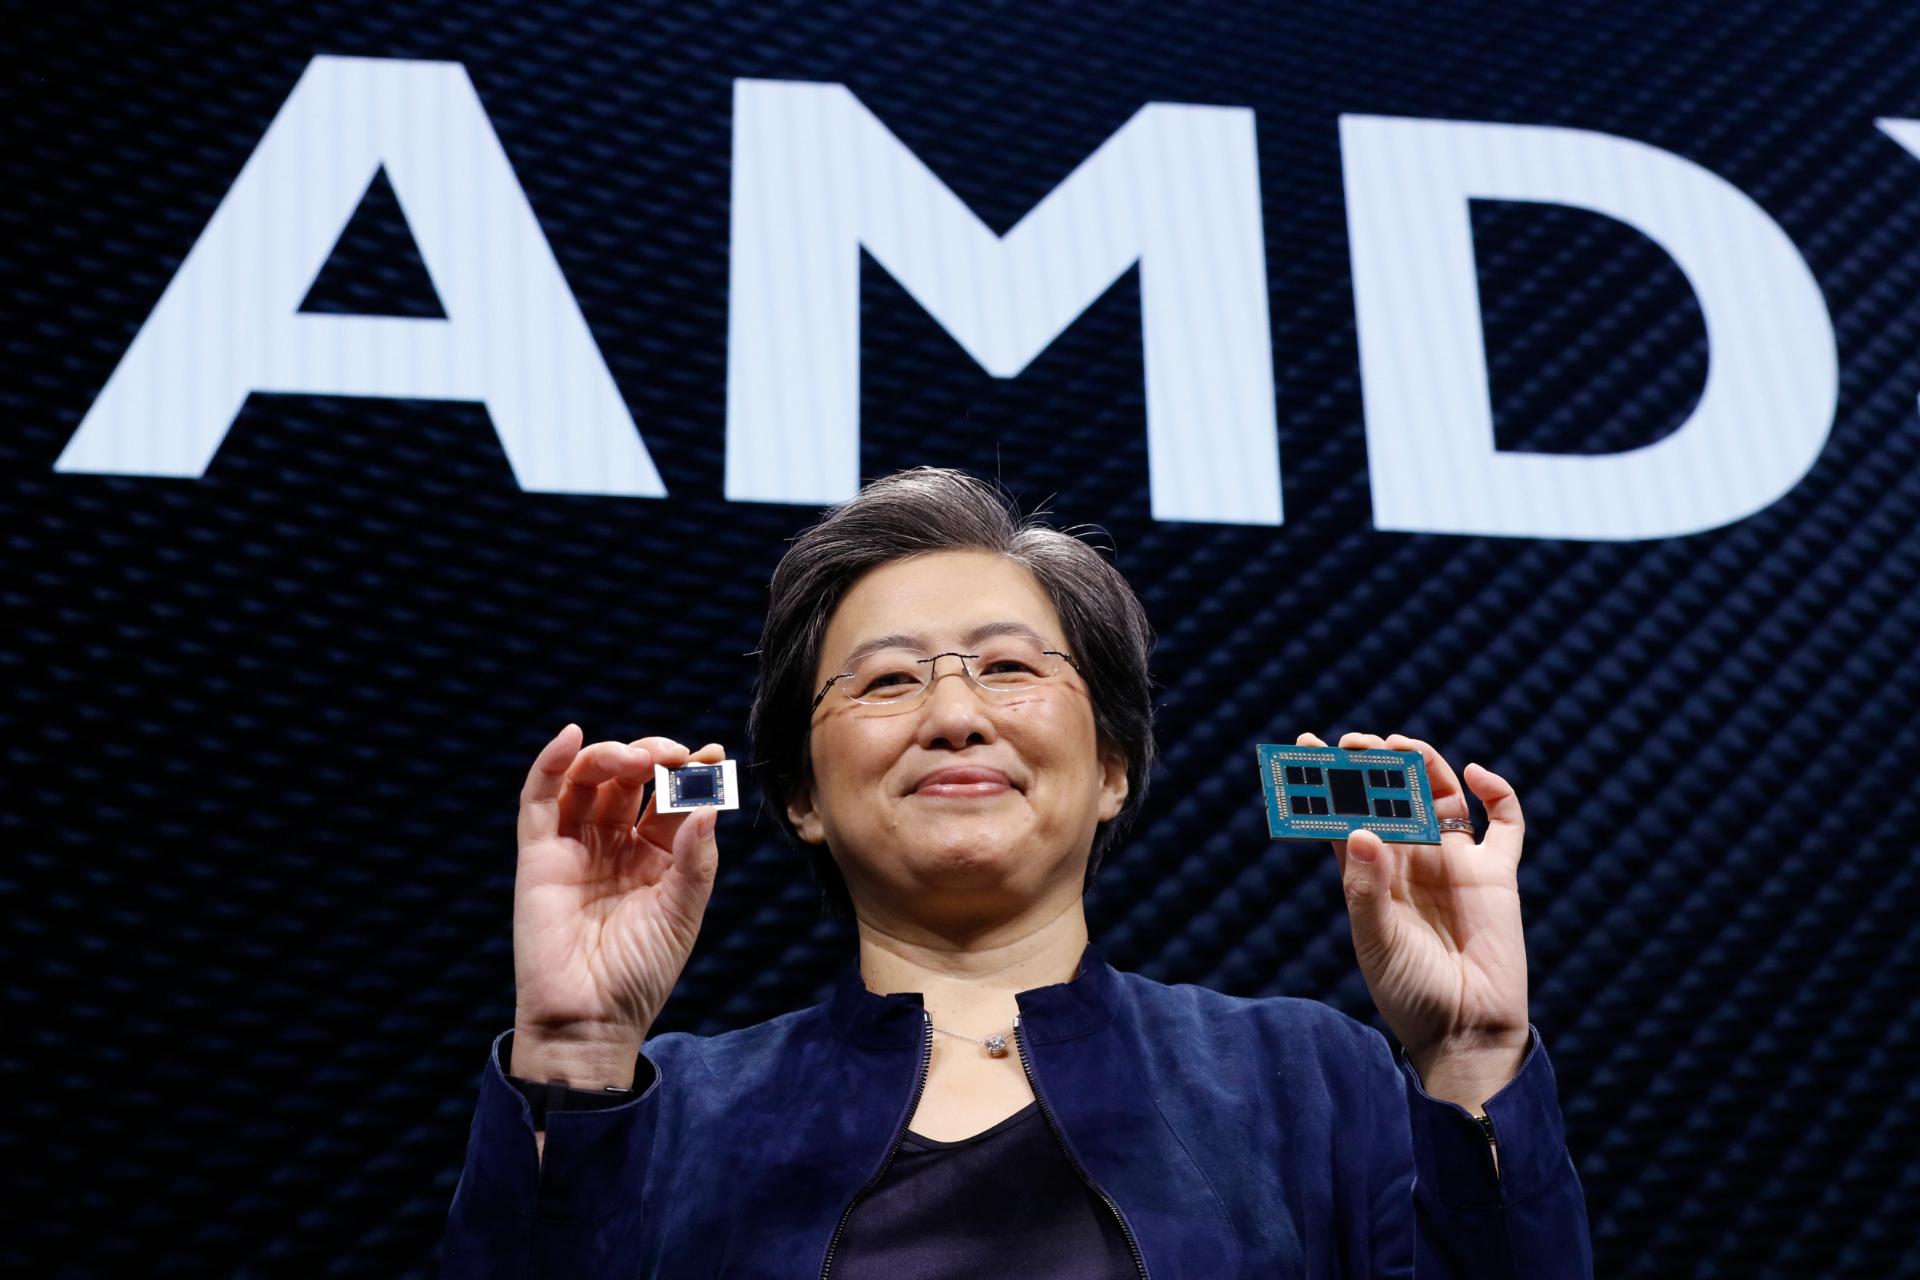 مرجع متخصصين ايران دكتر ليزا سو مديرعامل اي ام دي / AMD CEO Lisa Su درحال لبخند در جلوي لوگو شركت با دو تراشه